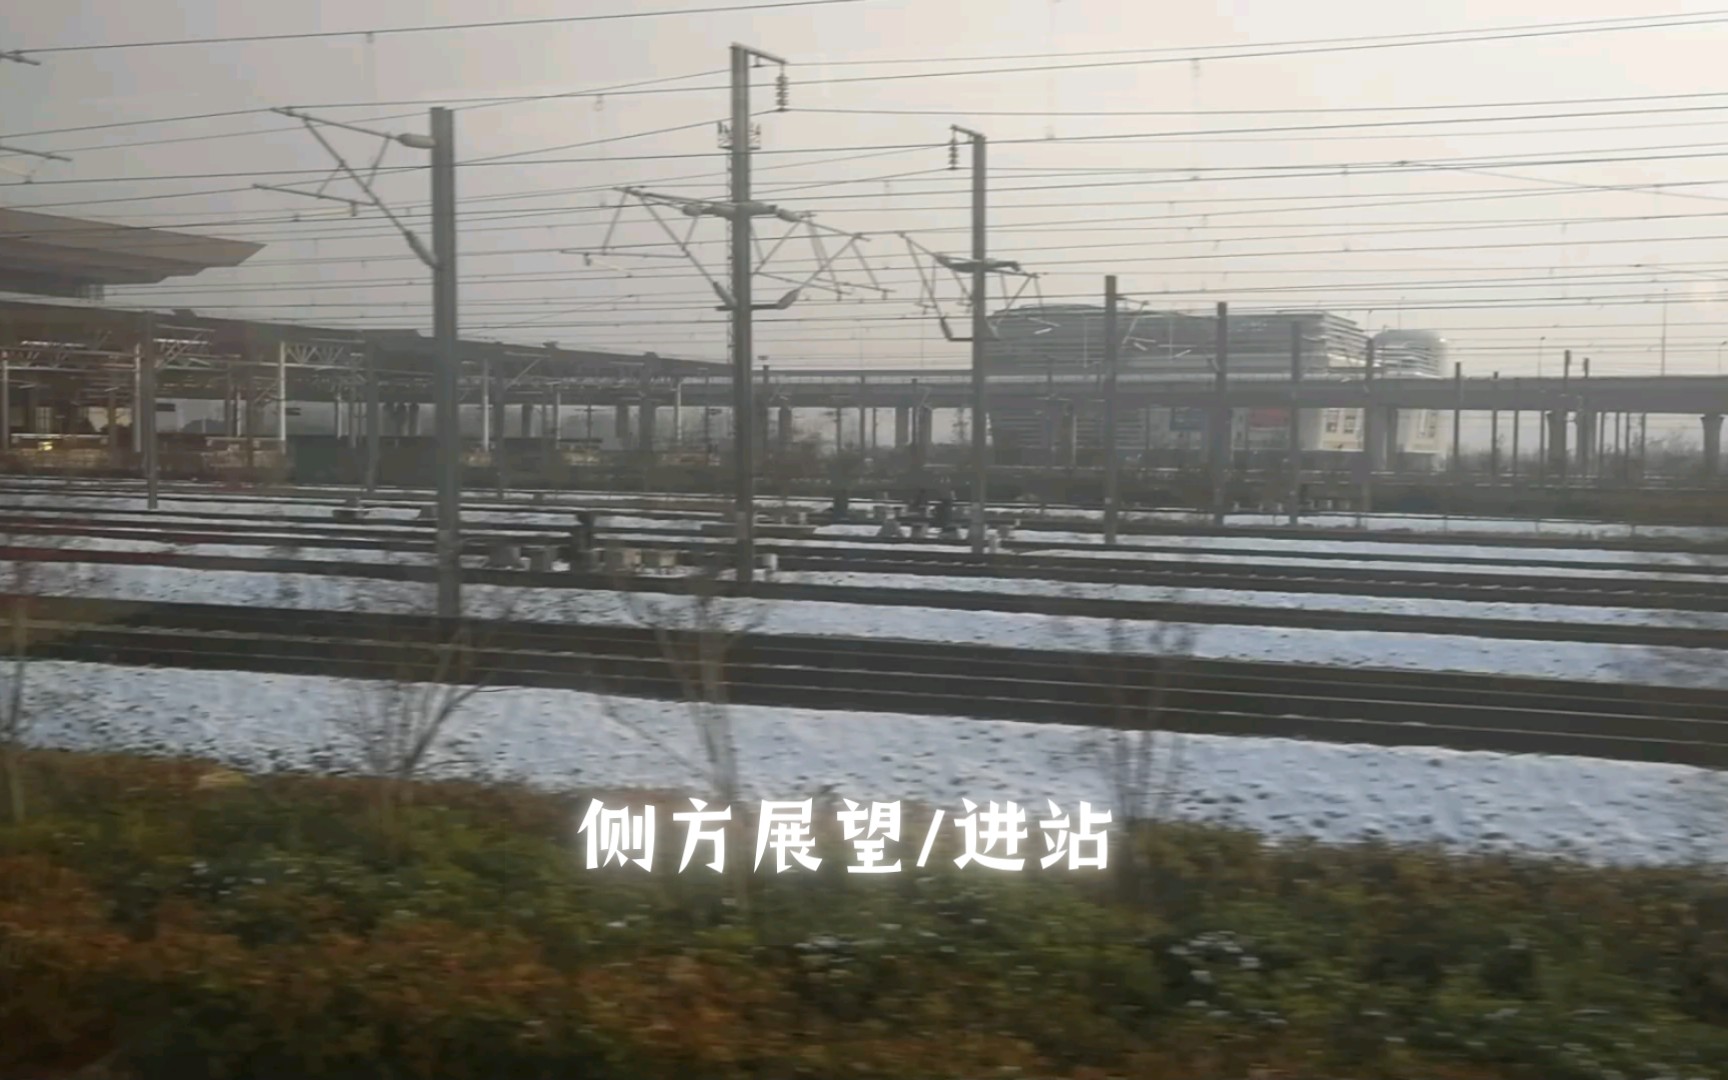 【交通/国铁/进站/侧方展望】crh2a d3074列车 重庆北 - 上海虹桥 进合肥南站